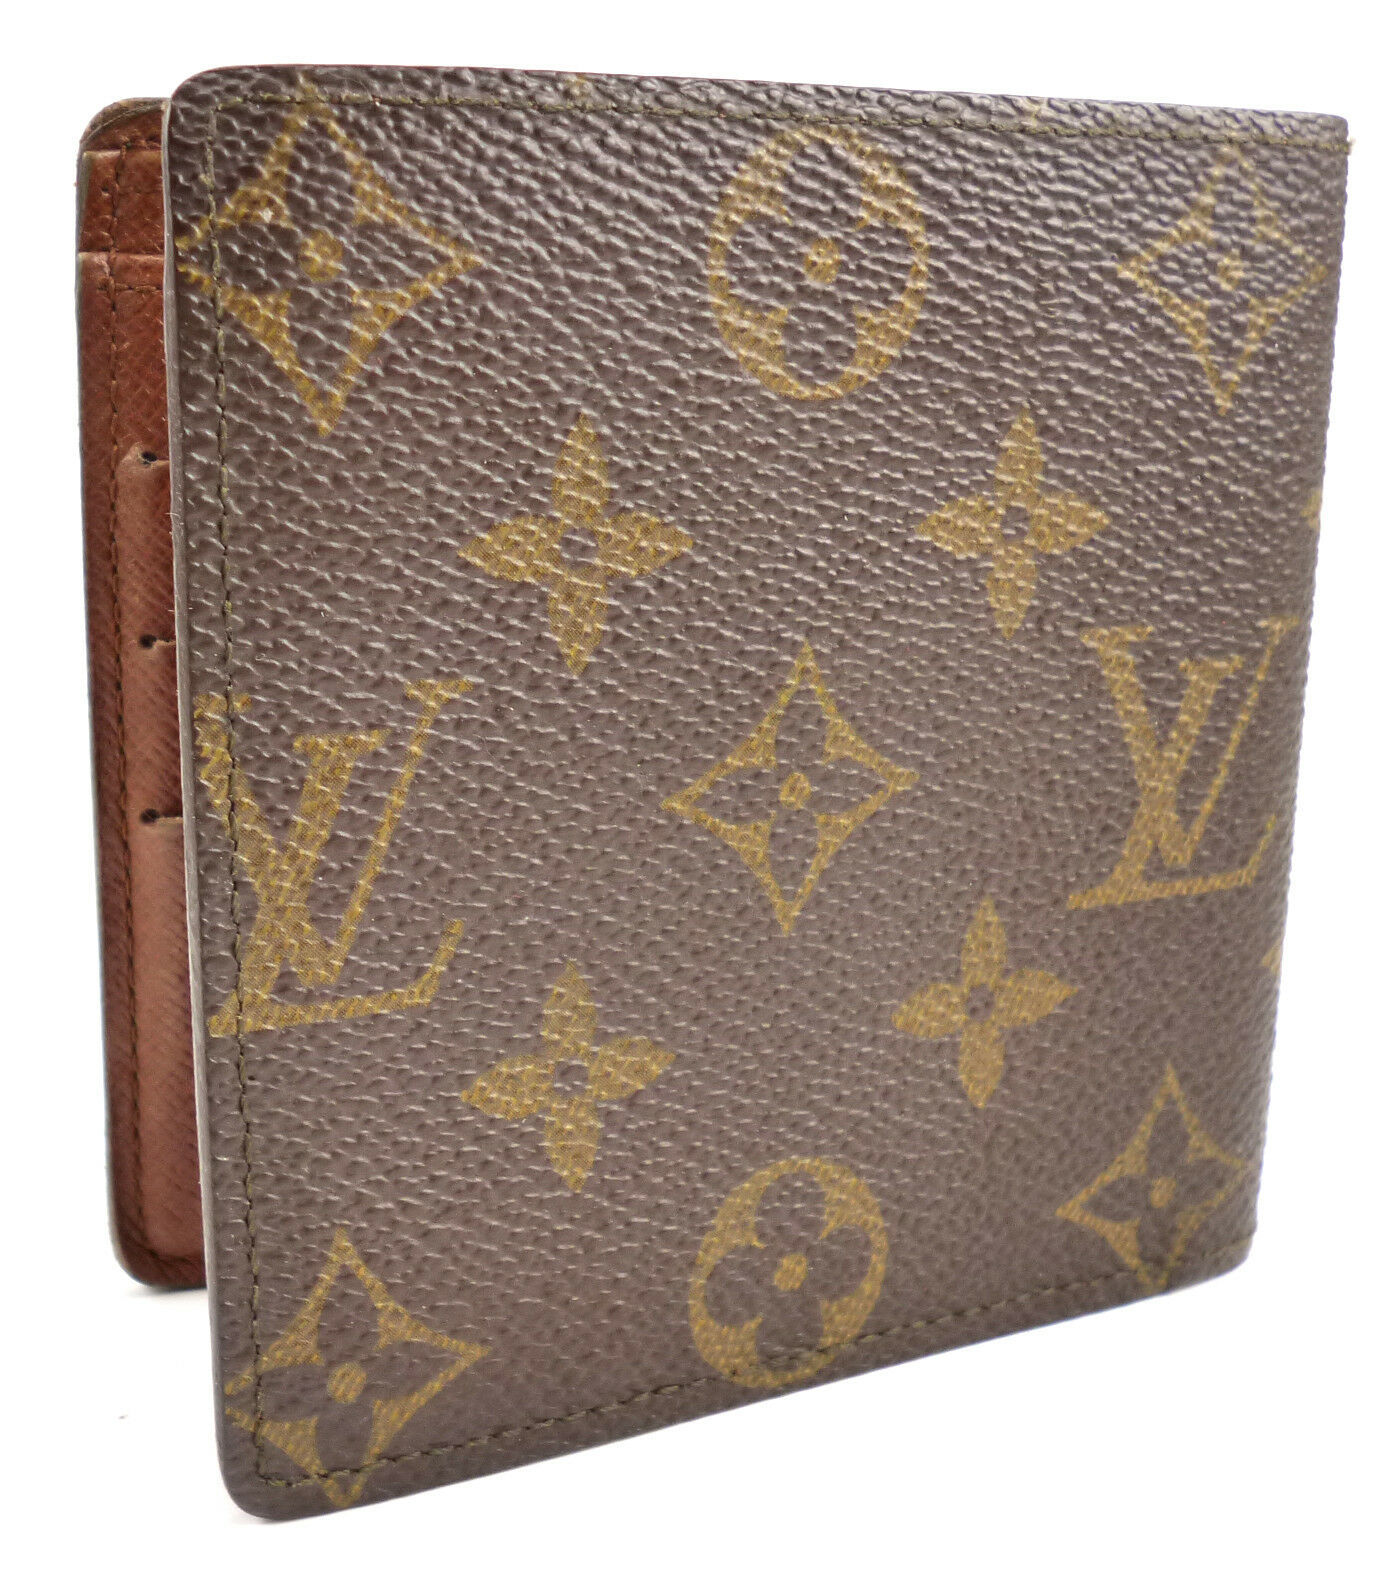 Shop Louis Vuitton MARCO Marco wallet (M62288) by luxurysuite